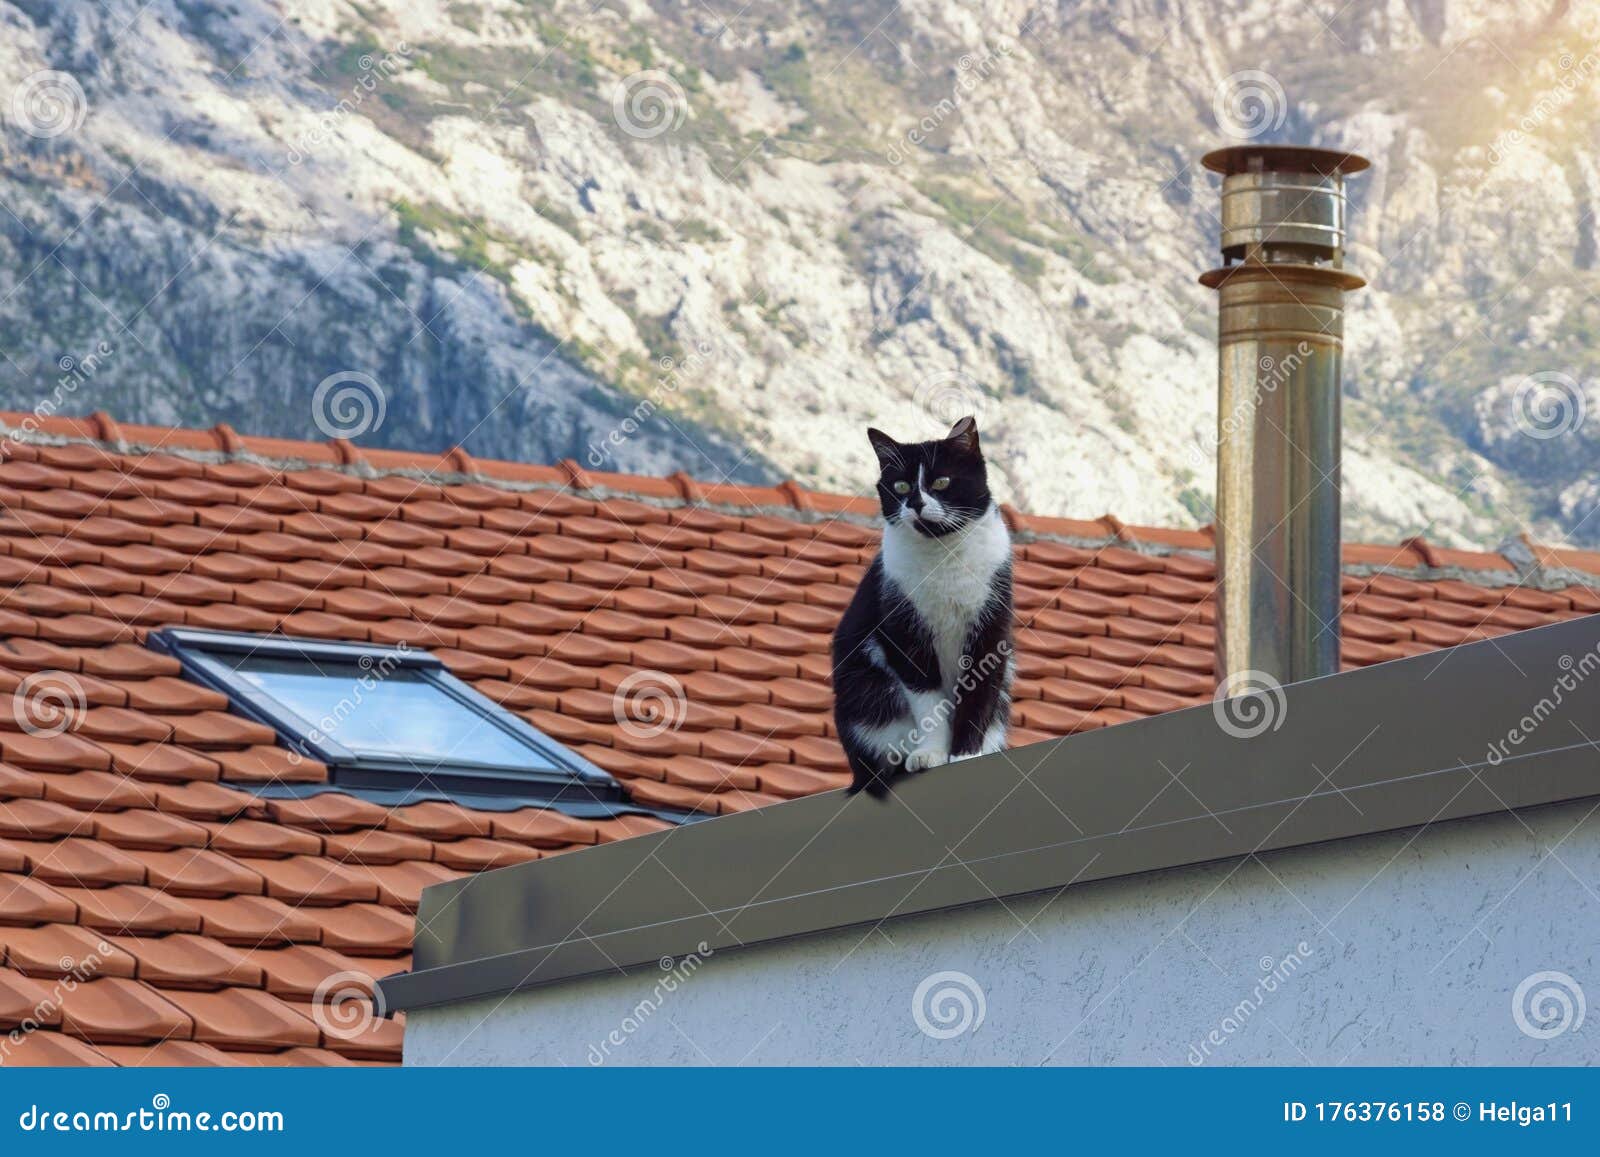 un-gato-solitario-de-color-blanco-y-negro-sentado-en-el-techo-tejas-rojas-la-casa-montenegro-176376158.jpg